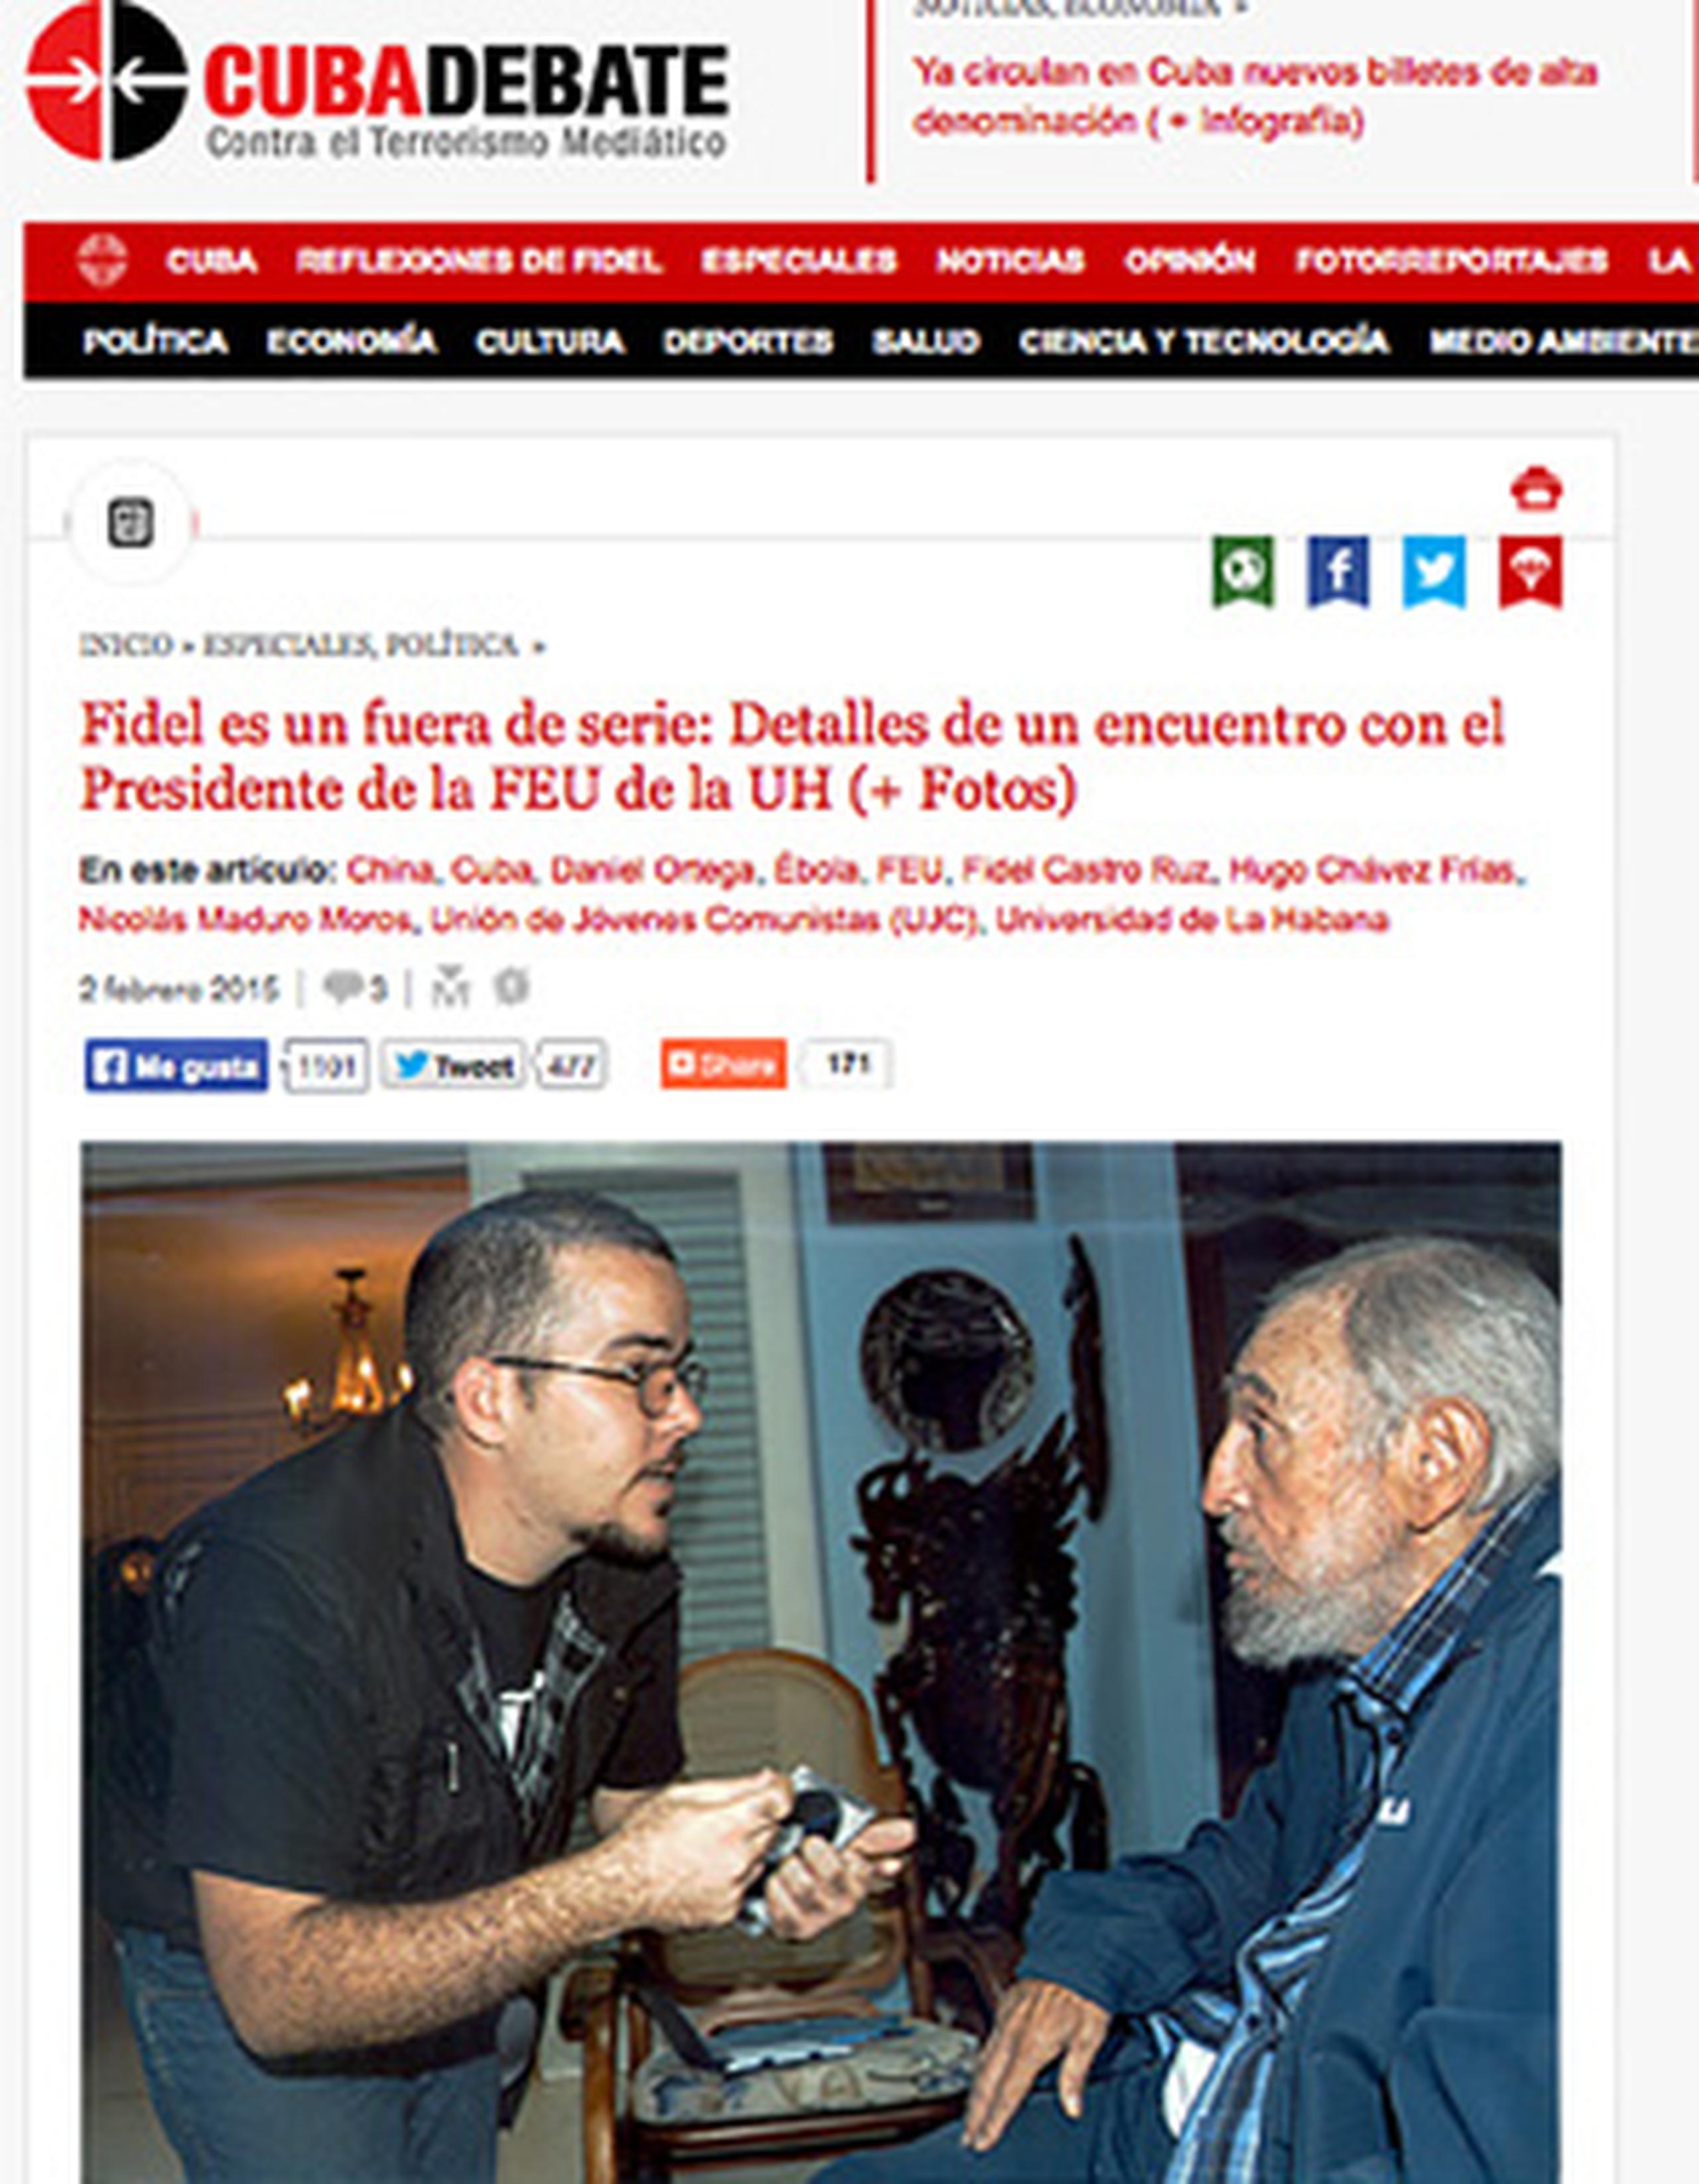 Castro, de 88 años, aparece en las fotos junto al joven Randy Perdomo, uno de los directivos de la Federación de Estudiantes Universitarios de Cuba. (AP)